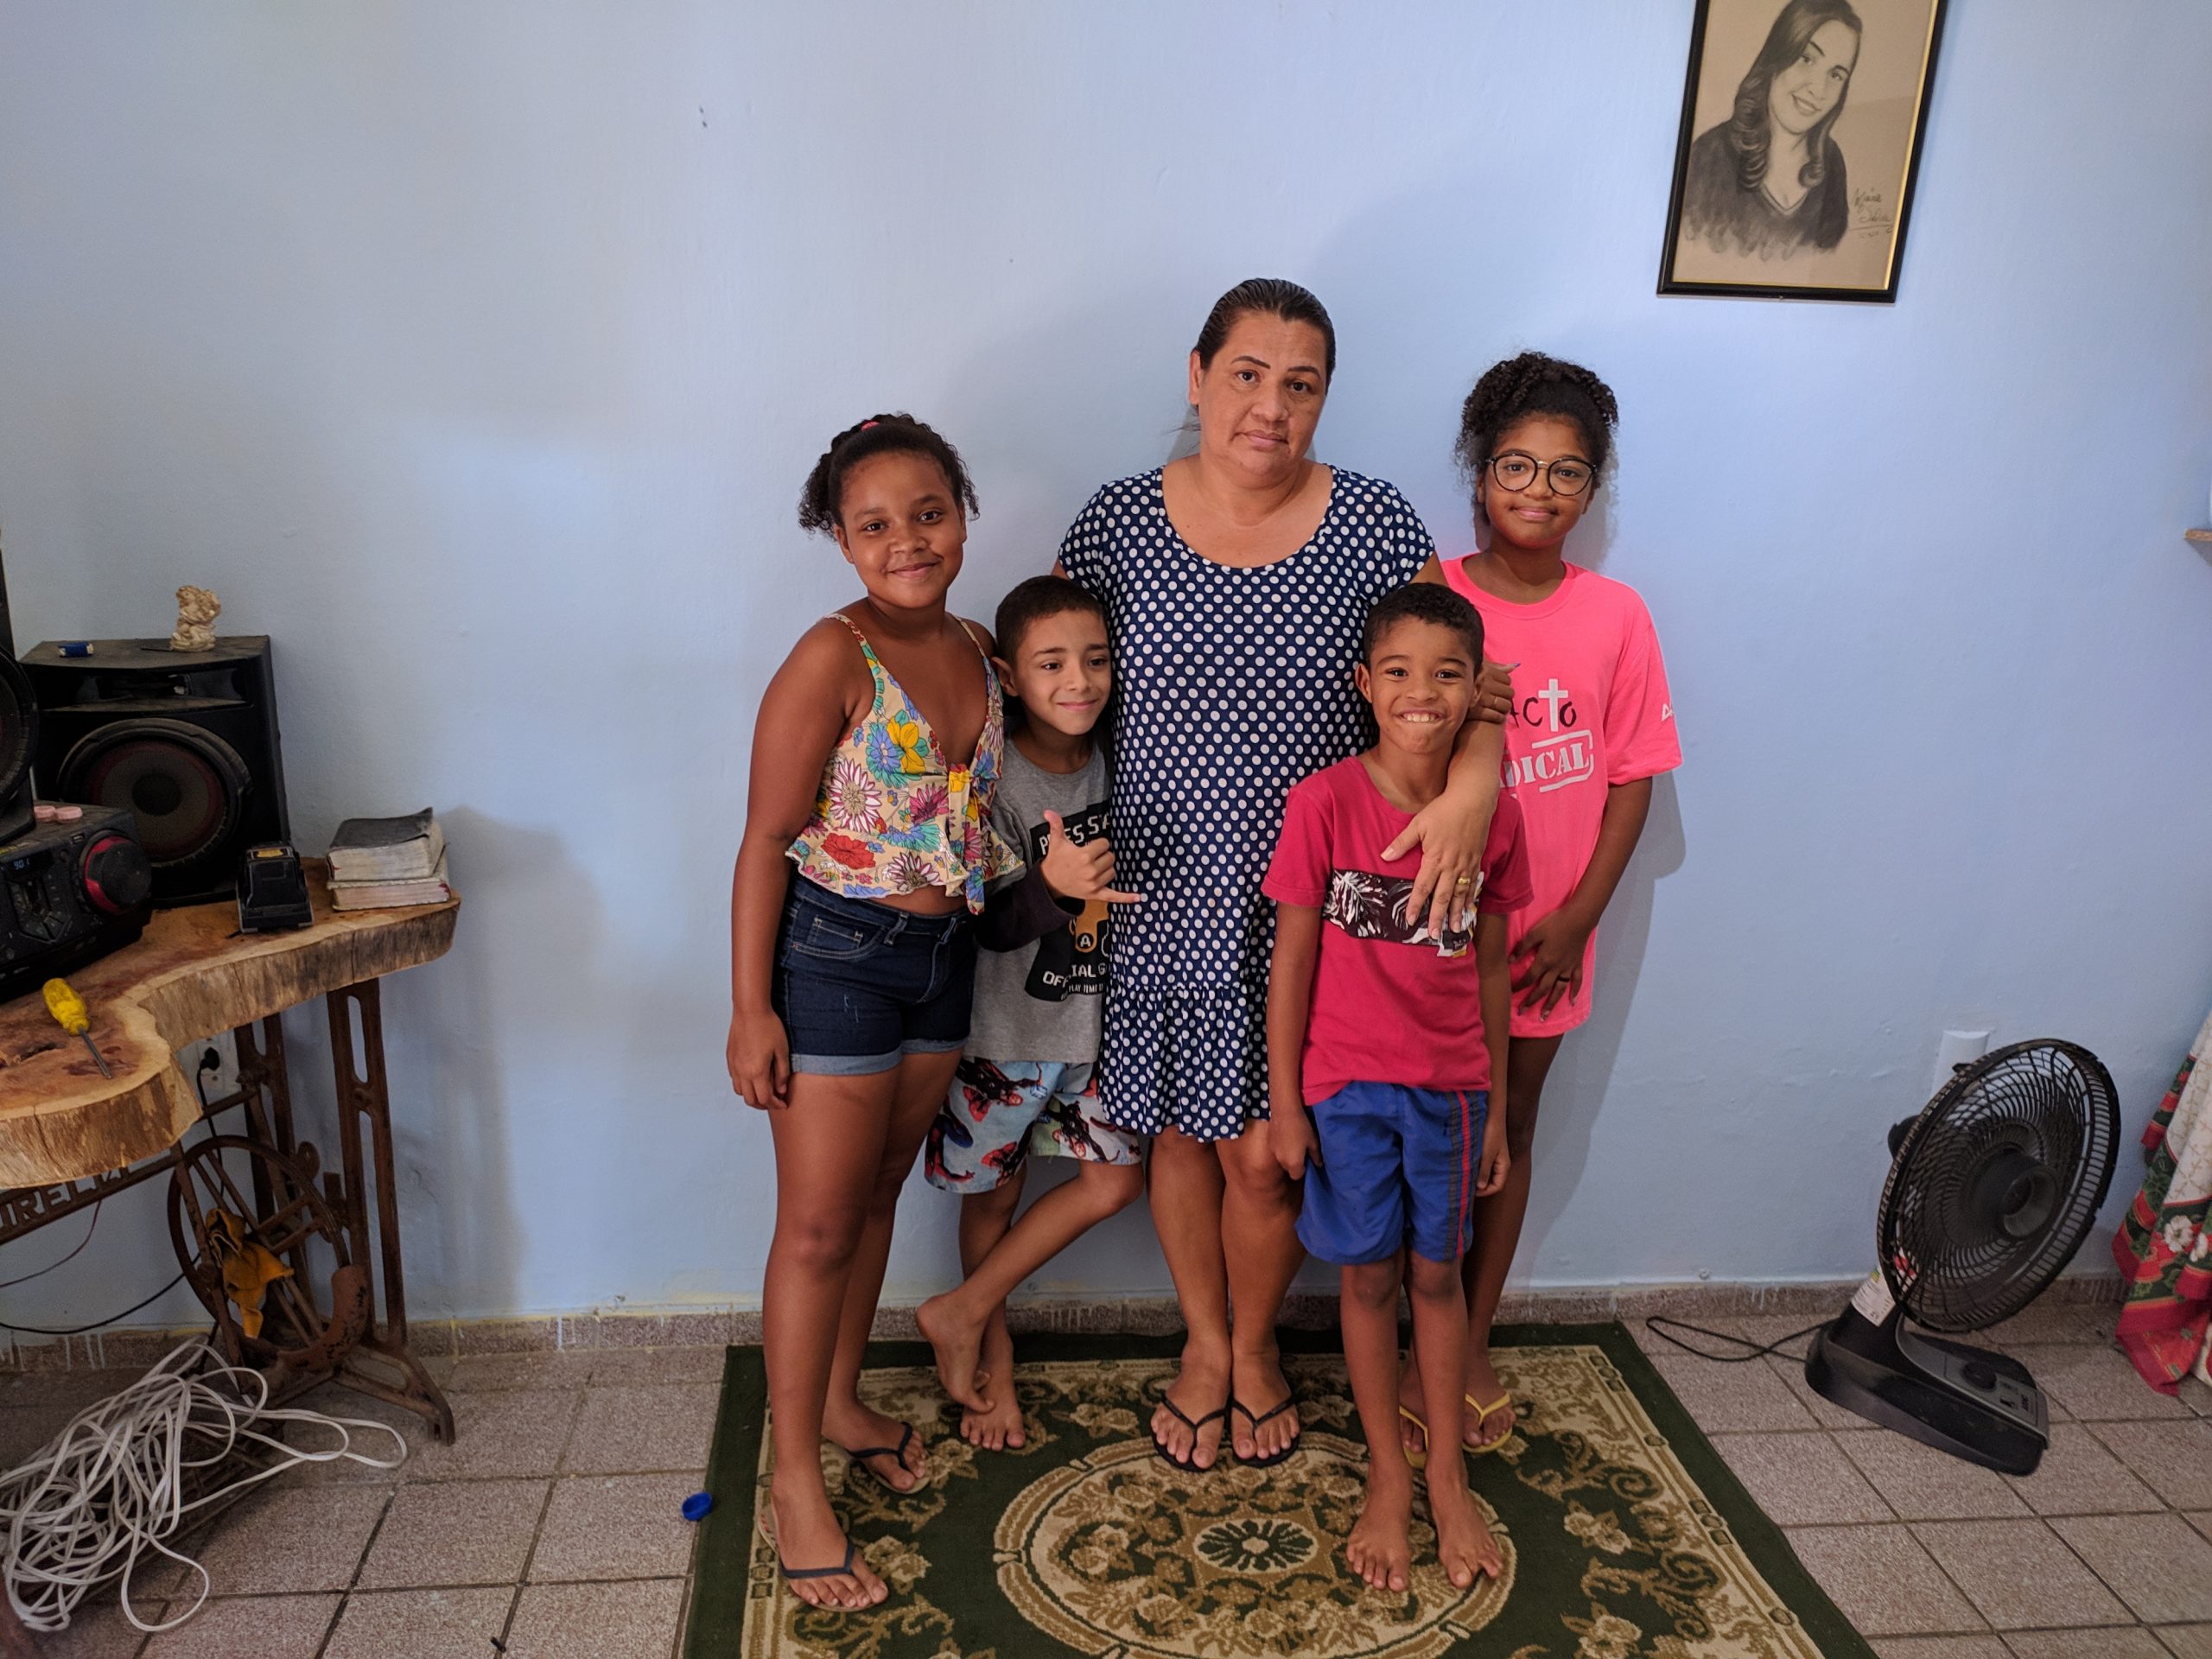 Uma mulher adulta e quatro crianças posam para a foto na sala de casa. Elas estão posicionadas em cima de um tapete; atrás, há uma parede branca e um quadro